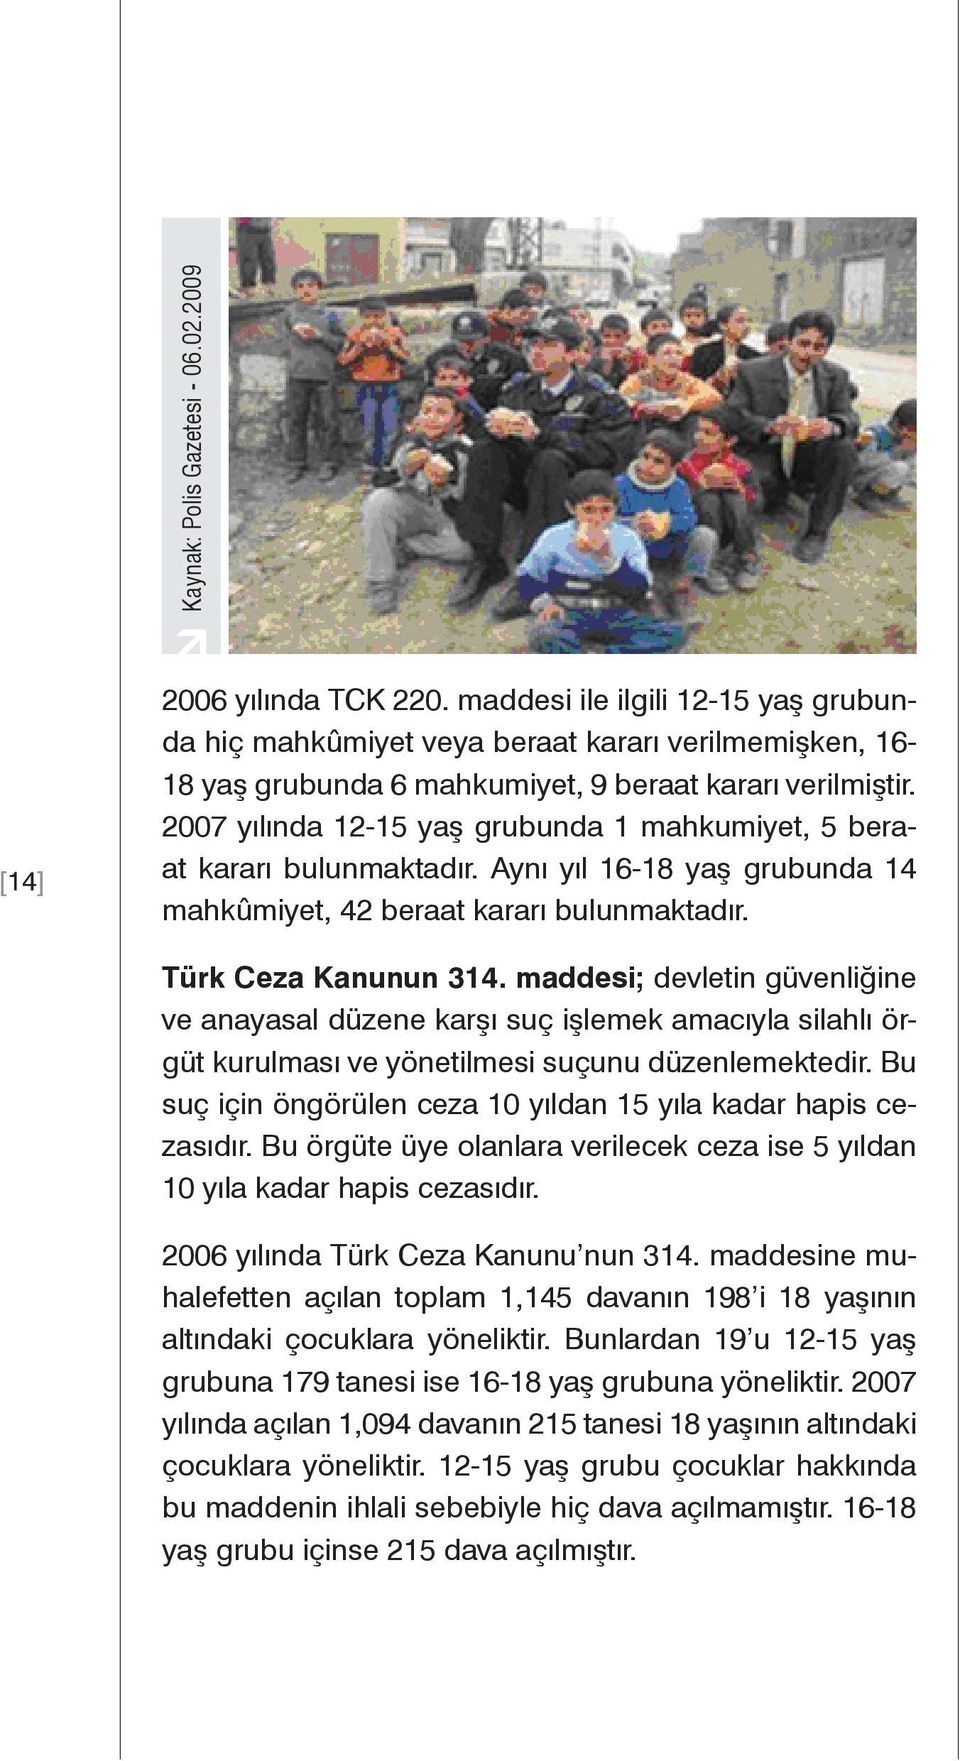 2007 yılında 12-15 yaş grubunda 1 mahkumiyet, 5 beraat kararı bulunmaktadır. Aynı yıl 16-18 yaş grubunda 14 mahkûmiyet, 42 beraat kararı bulunmaktadır. Türk Ceza Kanunun 314.